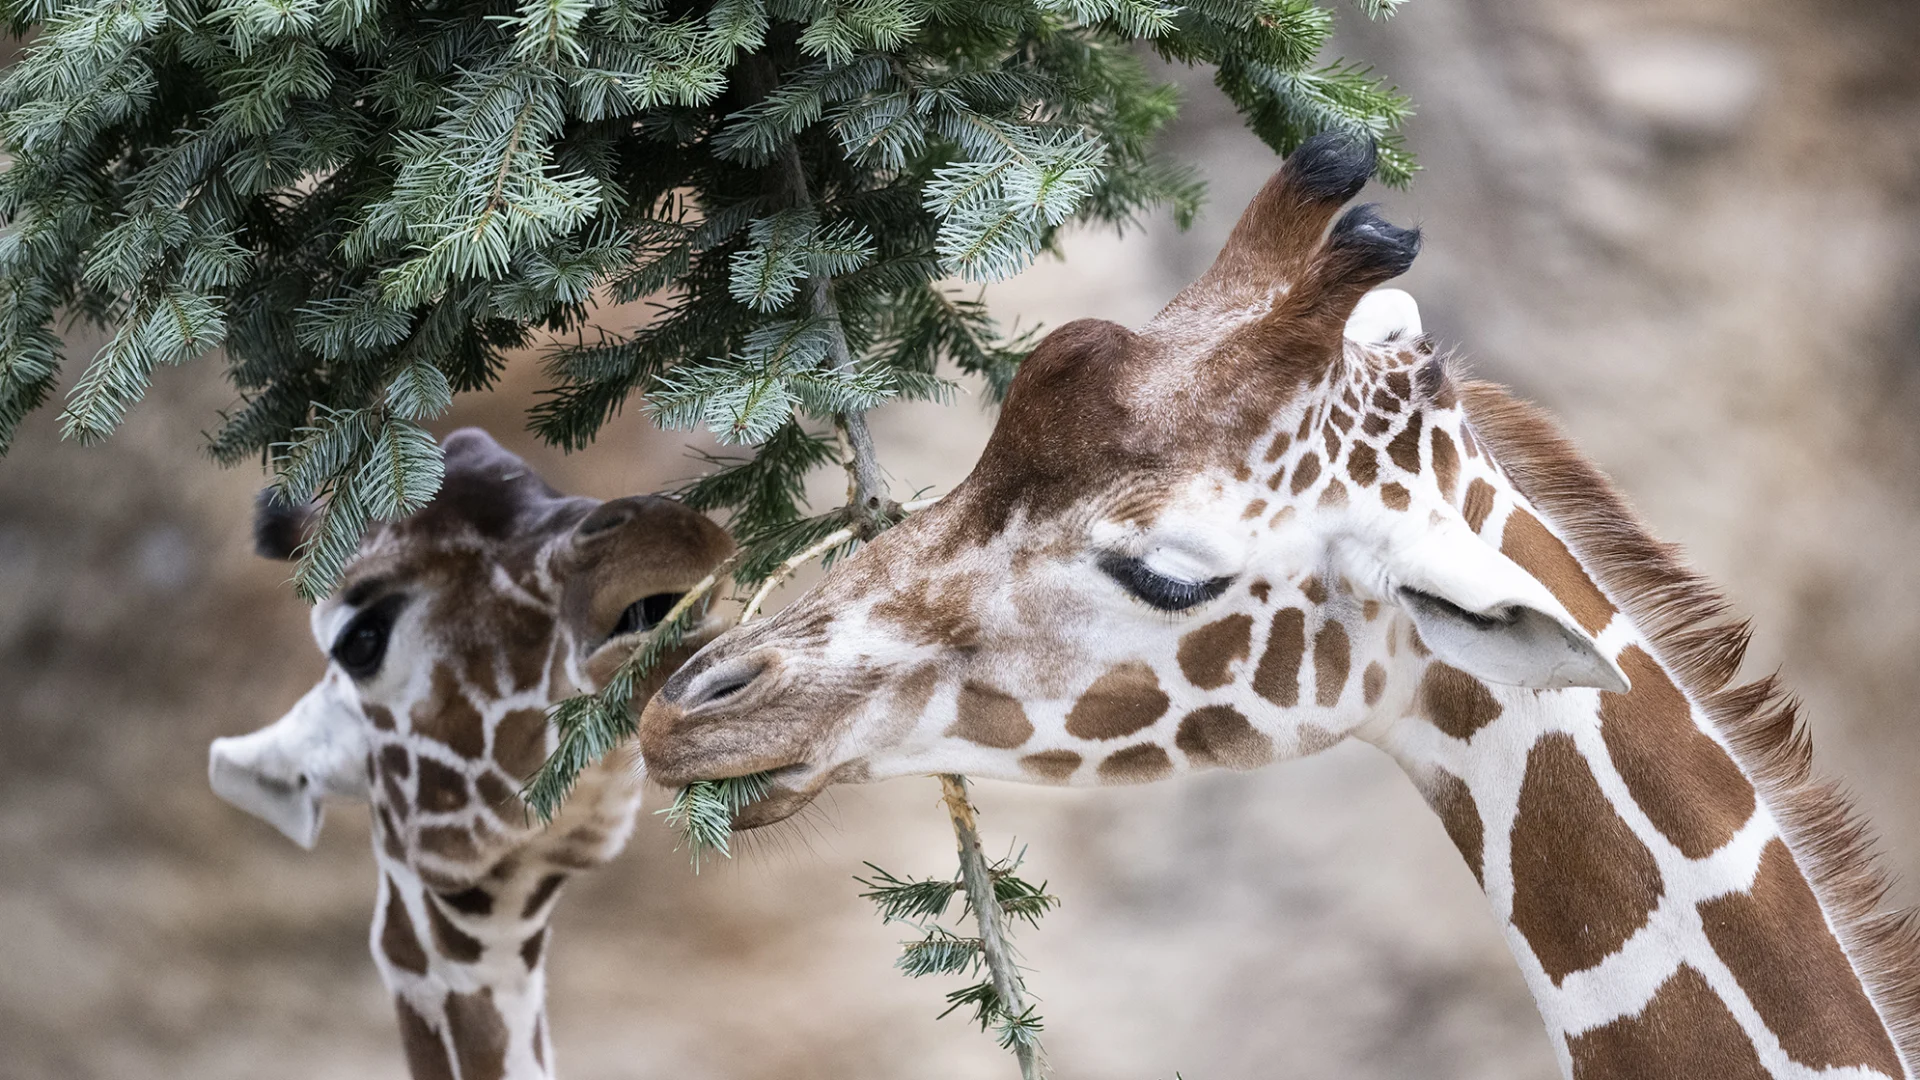 Les girafes du zoo de Zurich grignotent les aiguilles d’un sapin de Noël.